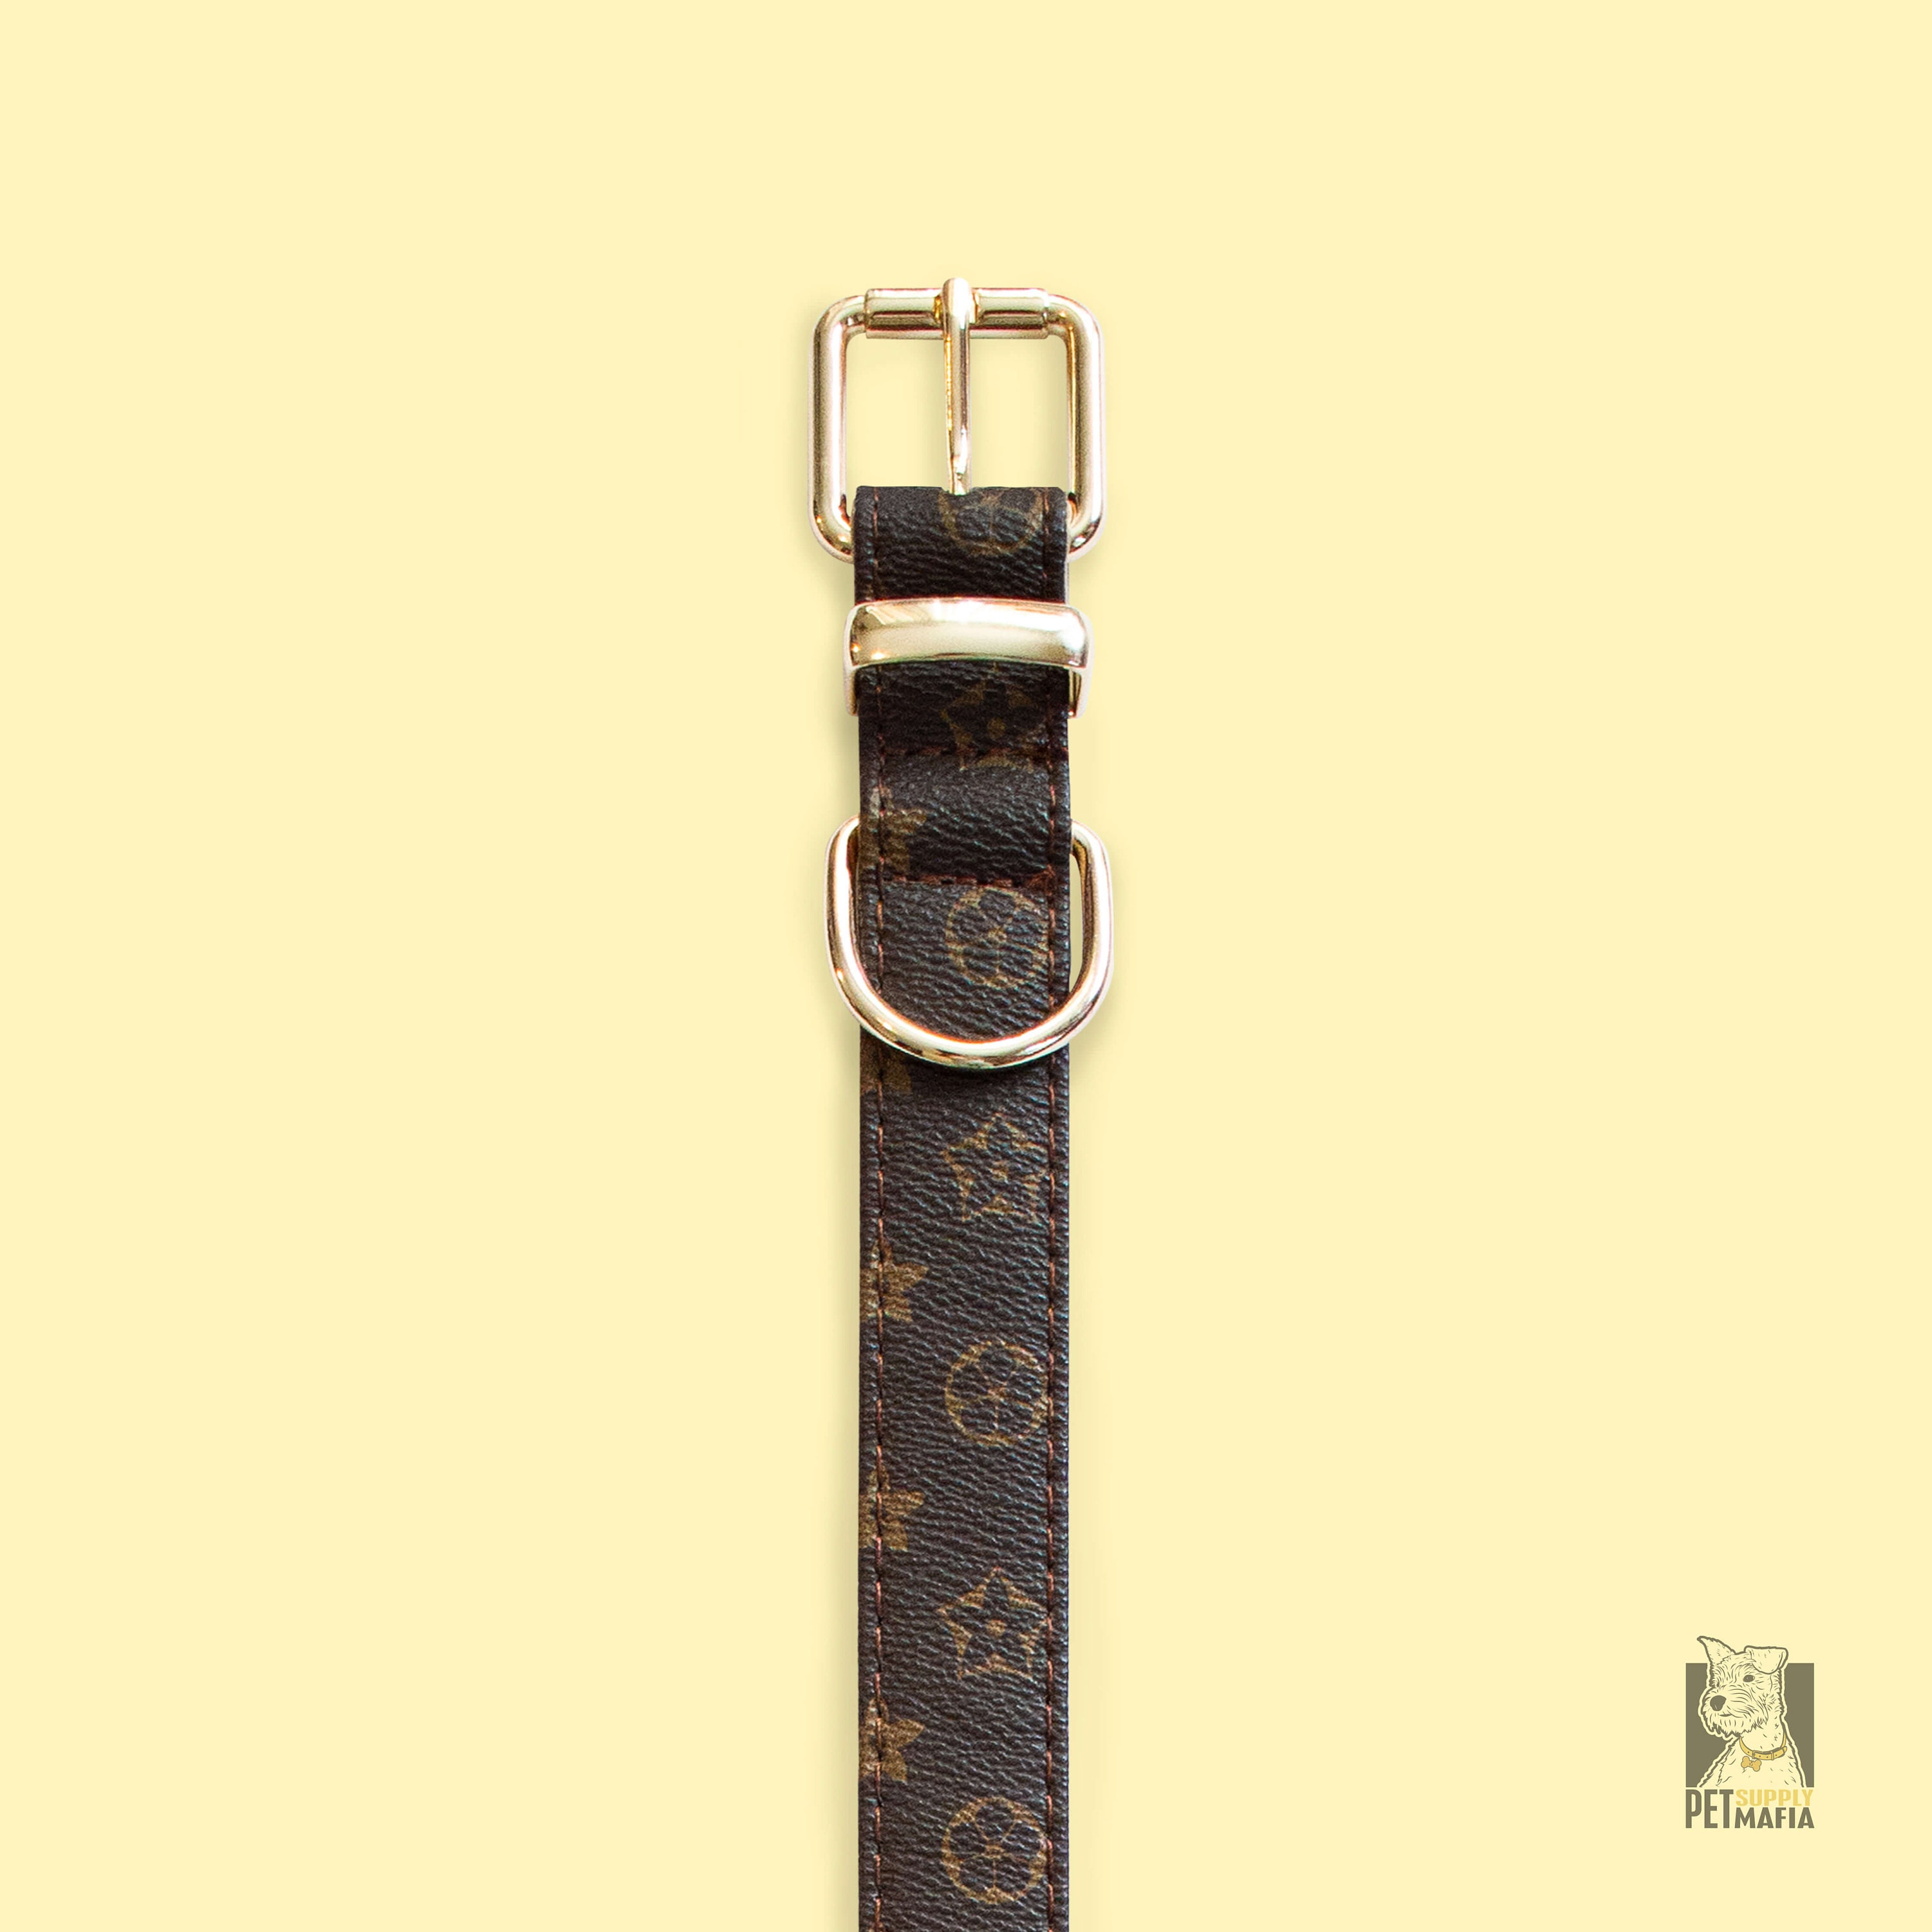 LV Dog Collar & Leash Set (Small/Medium Breed) — Frostytch